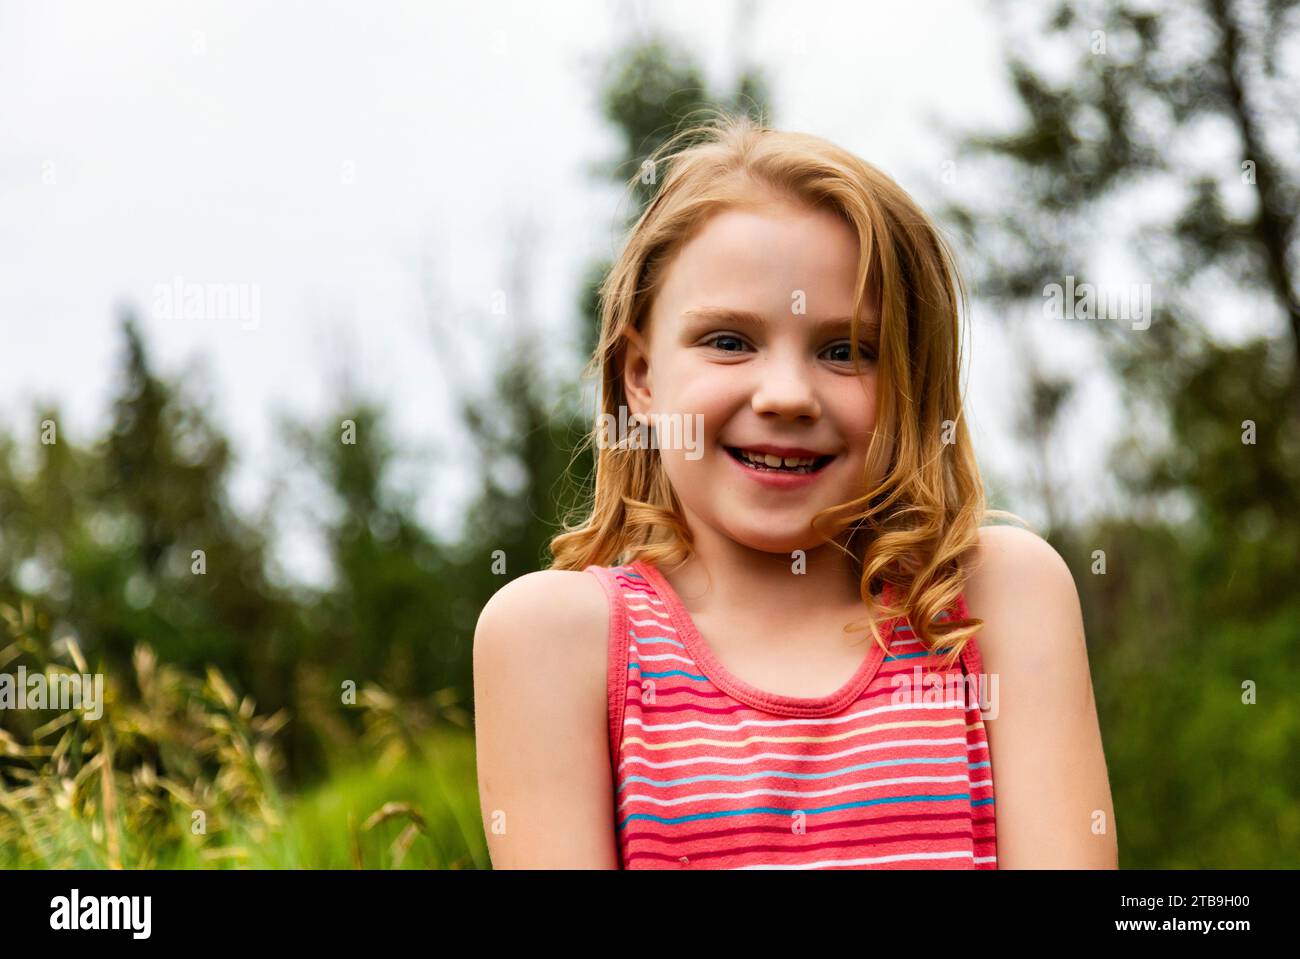 Ritratto di una giovane ragazza in un parco, sorridente alla macchina fotografica; Edmonton, Alberta, Canada Foto Stock